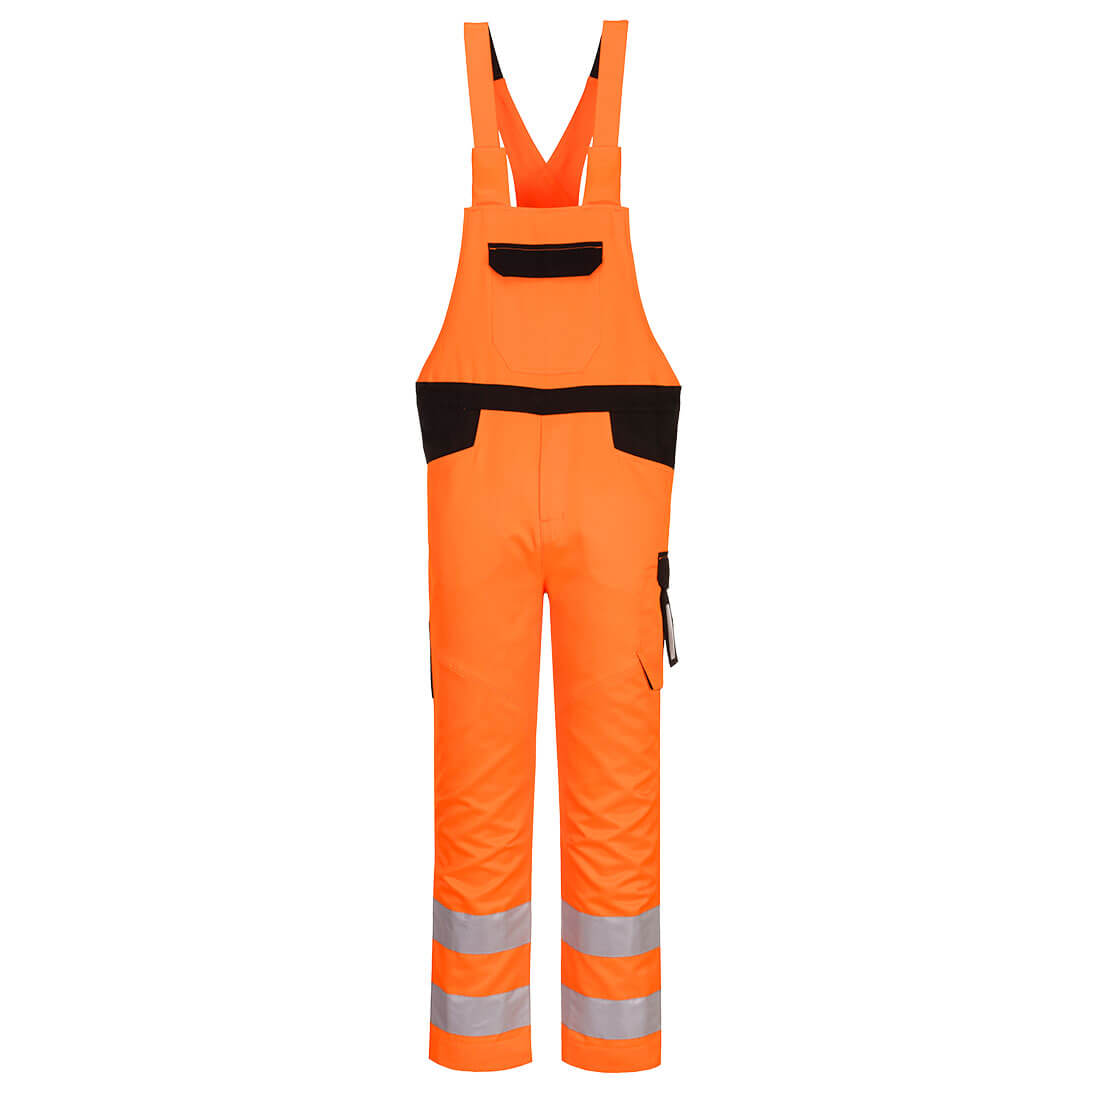 Pantaloni de protectie cu pieptar reflectorizanti portocaliu Portwest Hi-Vis Marime 3XL dacris.net imagine 2022 depozituldepapetarie.ro